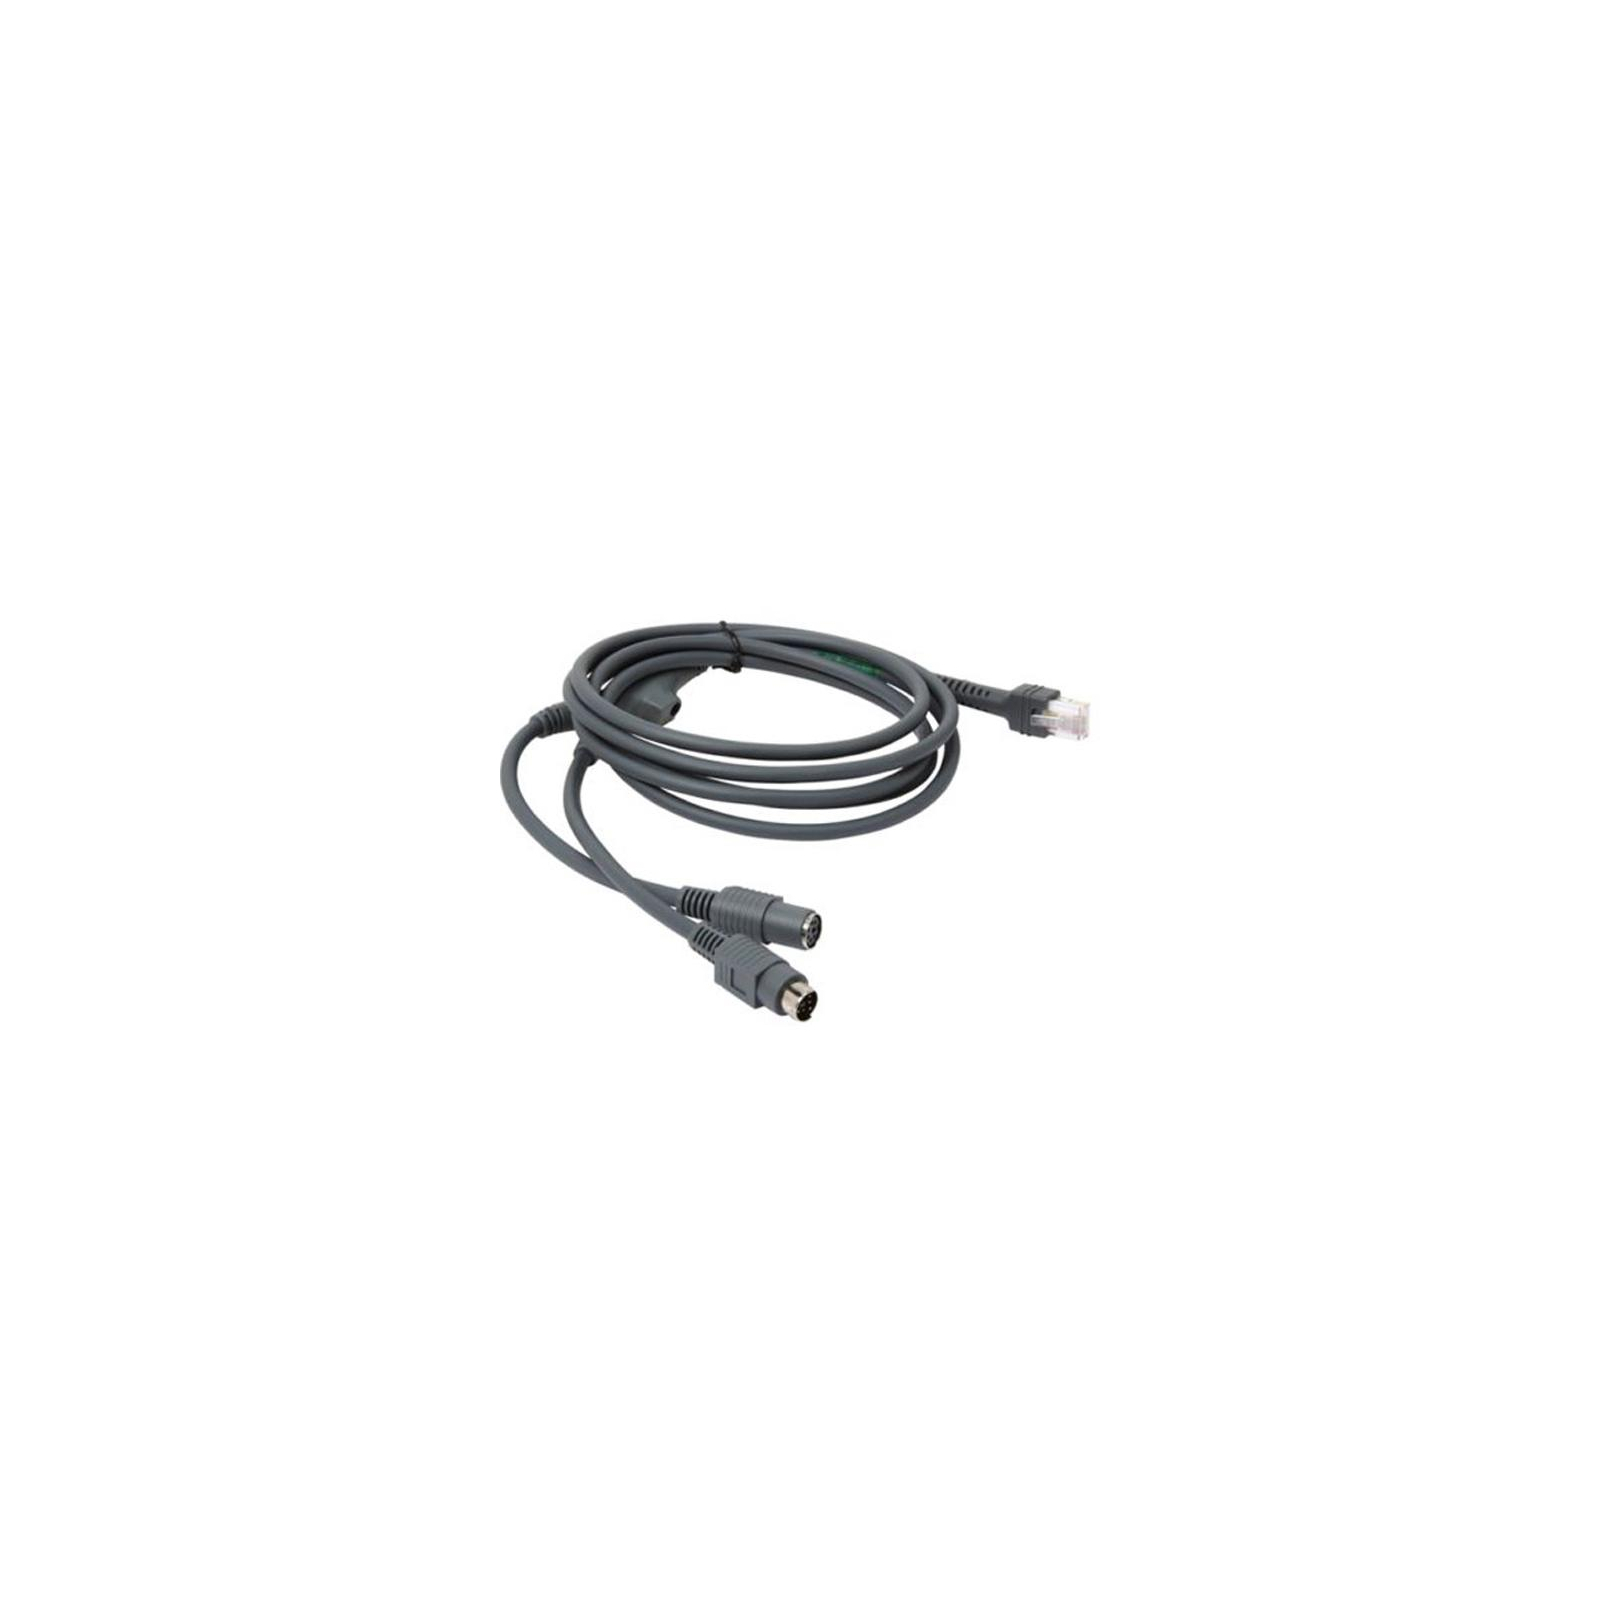 Інтерфейсний кабель Symbol/Zebra PS/2 для ручных сканеров (CBA-K01-S07PAR)